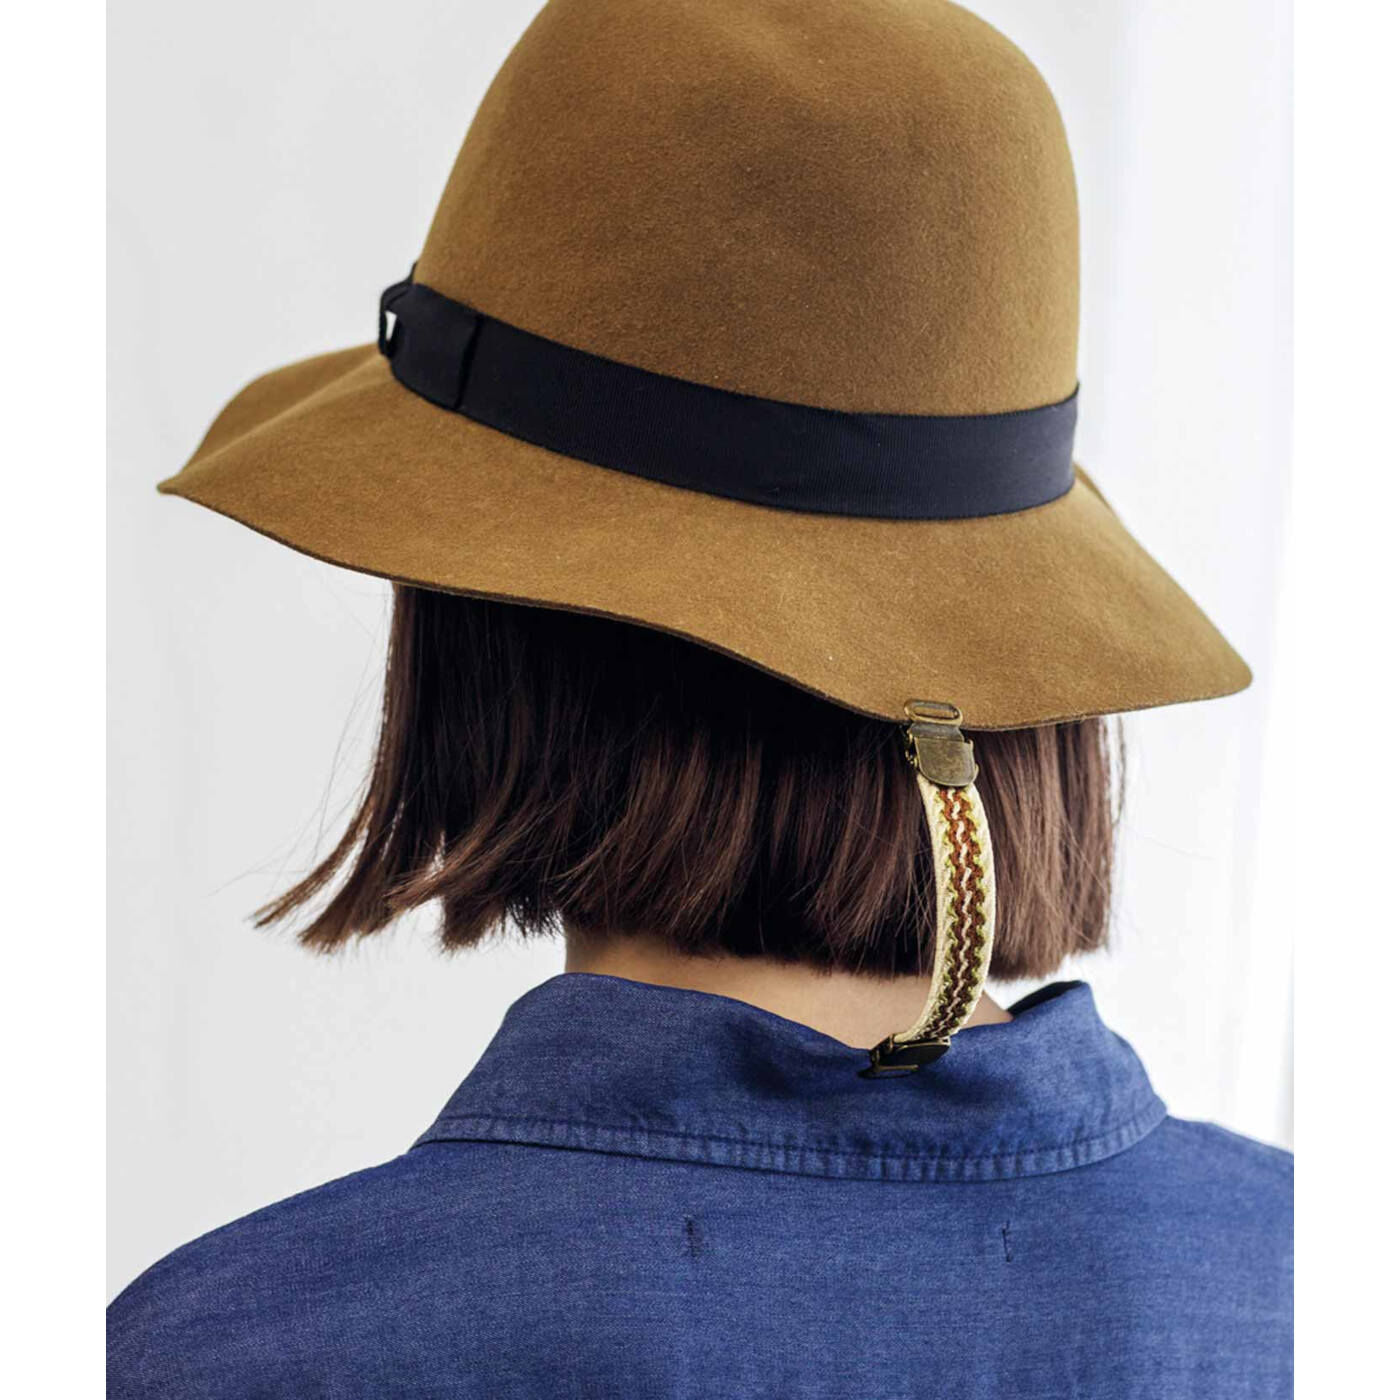 フェリシモの雑貨 Kraso|UP.de　ほっそりラインが手に入る きれいめさんのシェイプホルダーの会|帽子と服を留めておけば、風で帽子が飛んでも安心。アクセサリー感覚で使ってみて。　※写真は「ほっそりラインが手に入る カジュアルさんのシェイプホルダーの会」です。